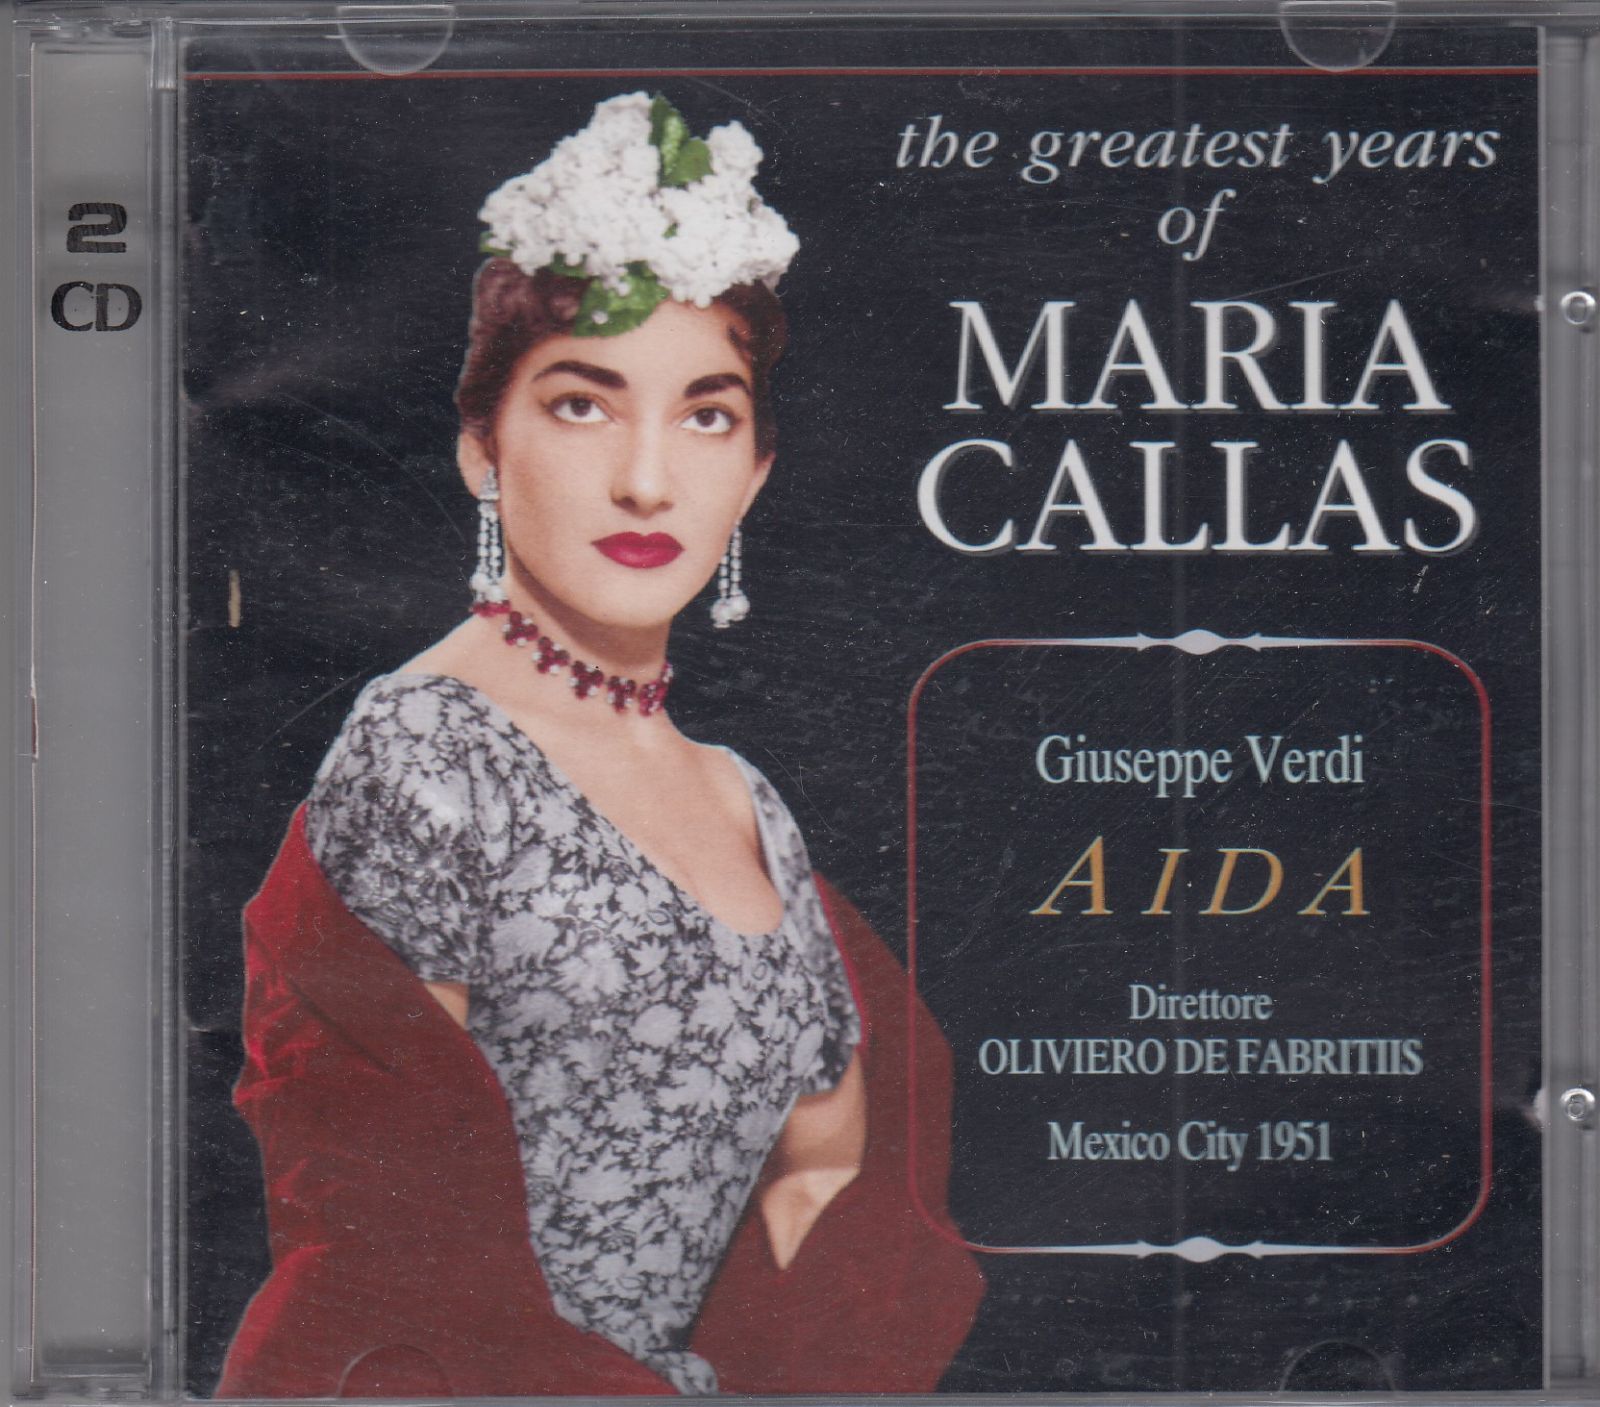 ヴェルディ アイーダ マリア・カラス デル・モナコ ファブリティース メキシコ 1951 チェトラ 西独 初期 Verdi Aida Maria Callas CETRA